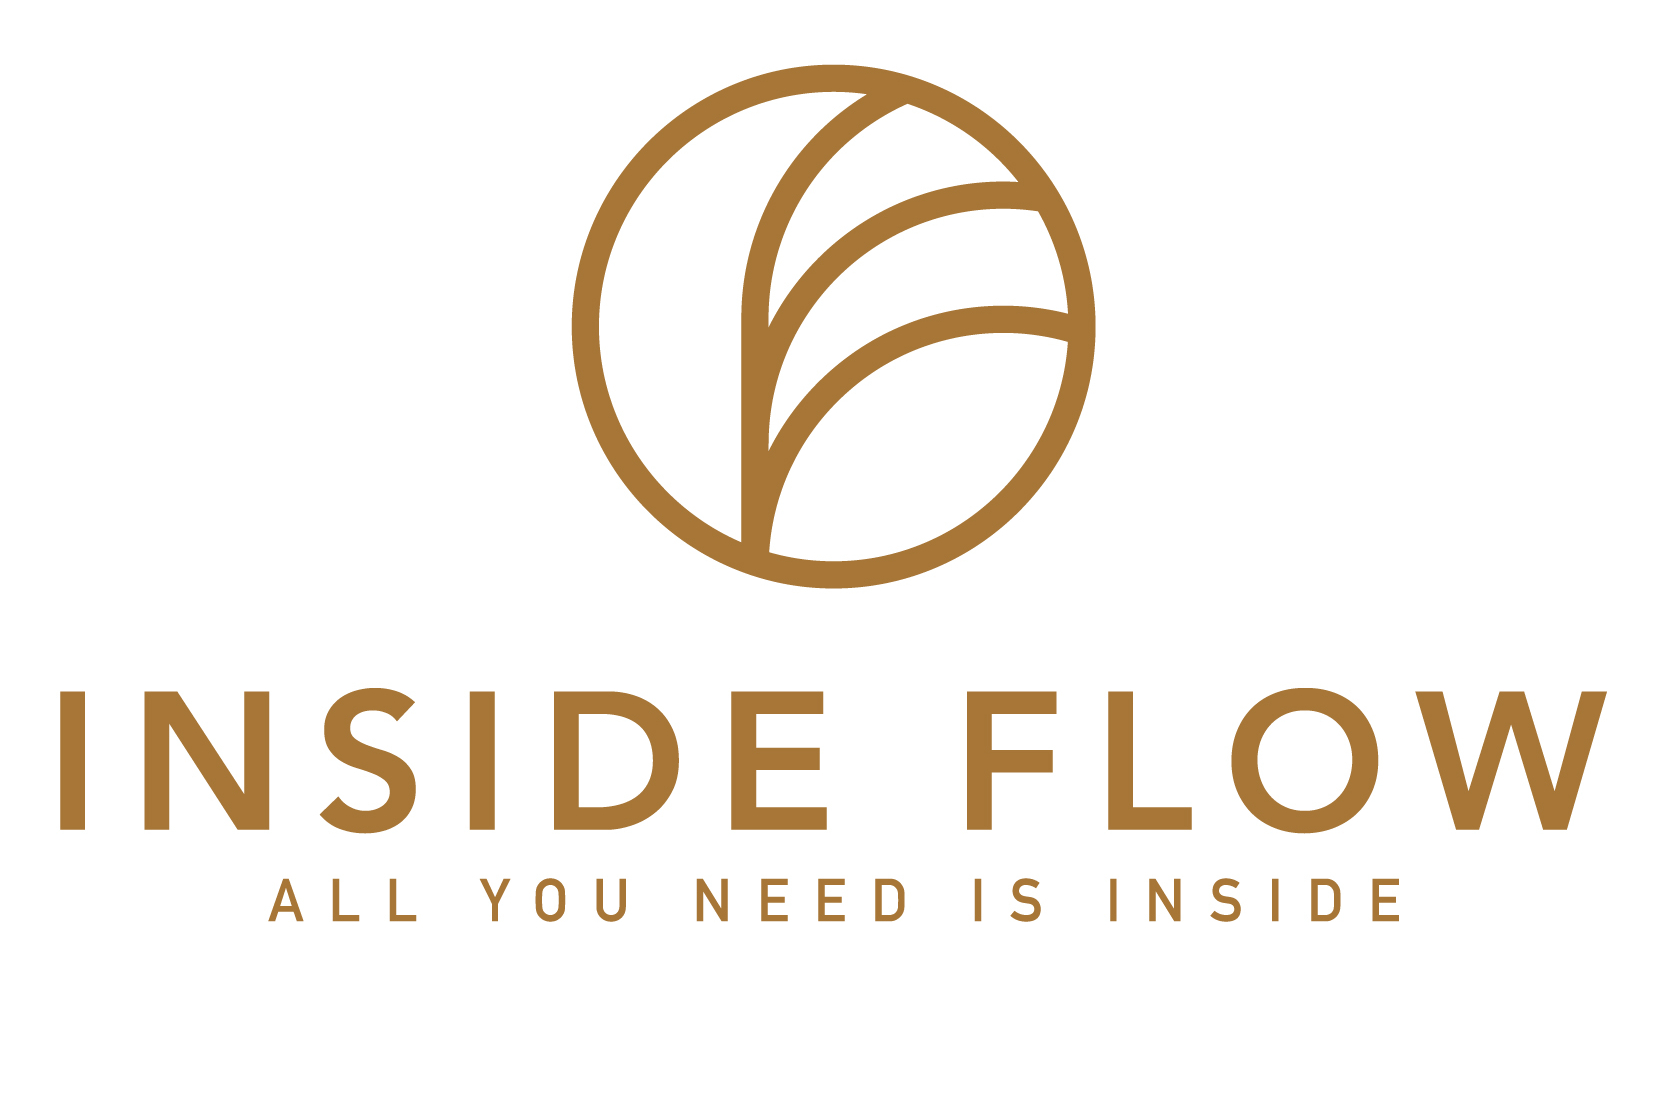 Insideflow-Primary-Logo-Gold-White-solid.jpg